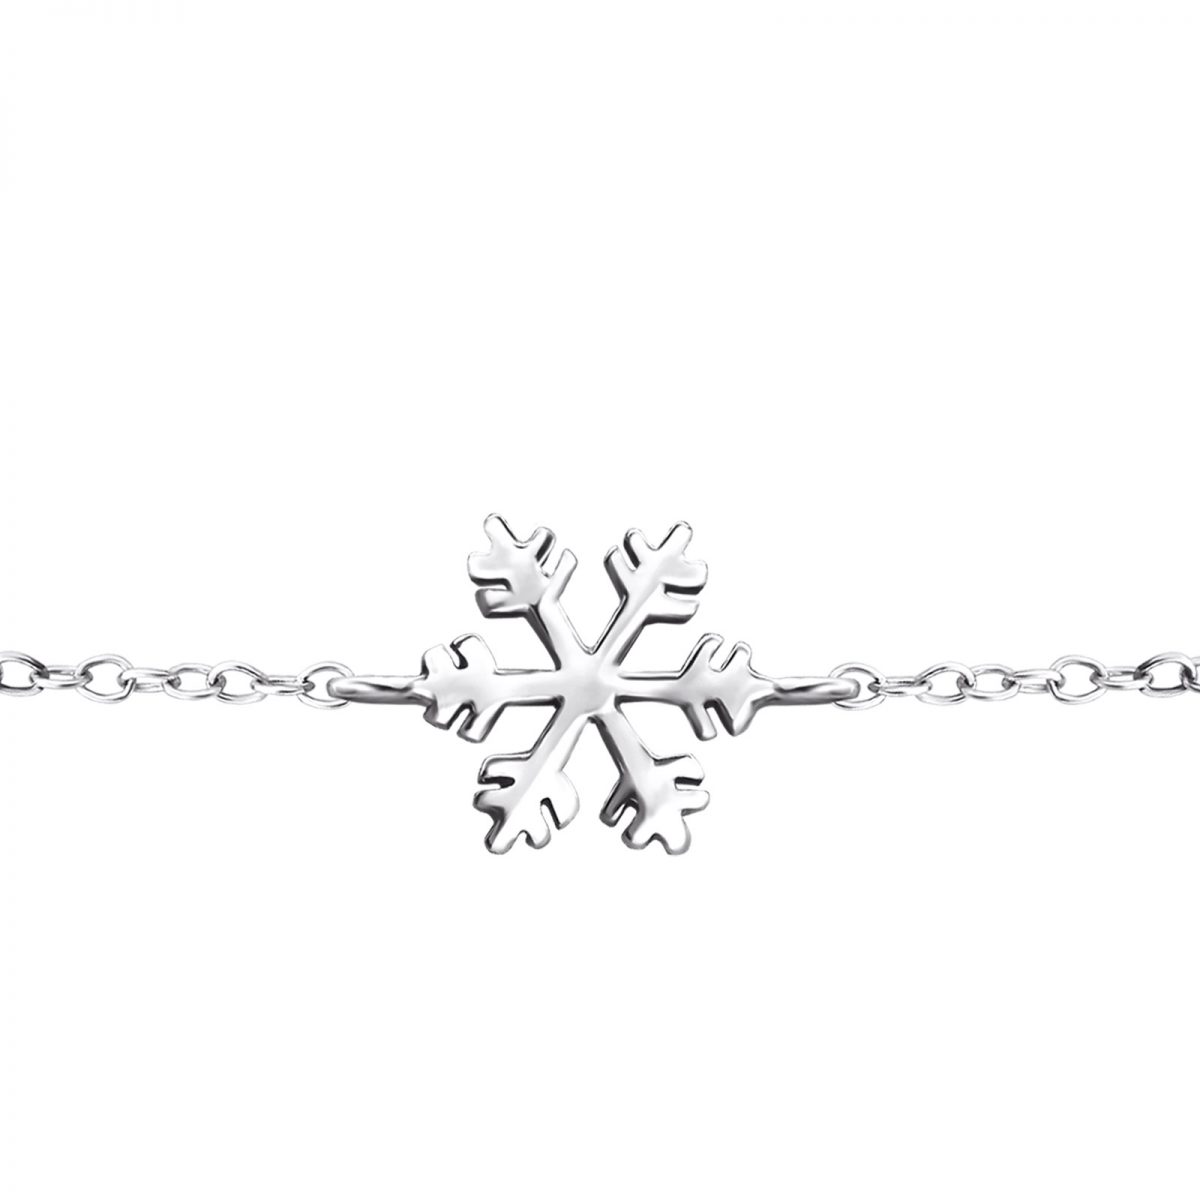 Zilveren sneeuwvlok armband  Silver snowflake chain bracelet  armband dames zilver  Lengte verstelbaar 16-18cm  Zilverana  925 zilver